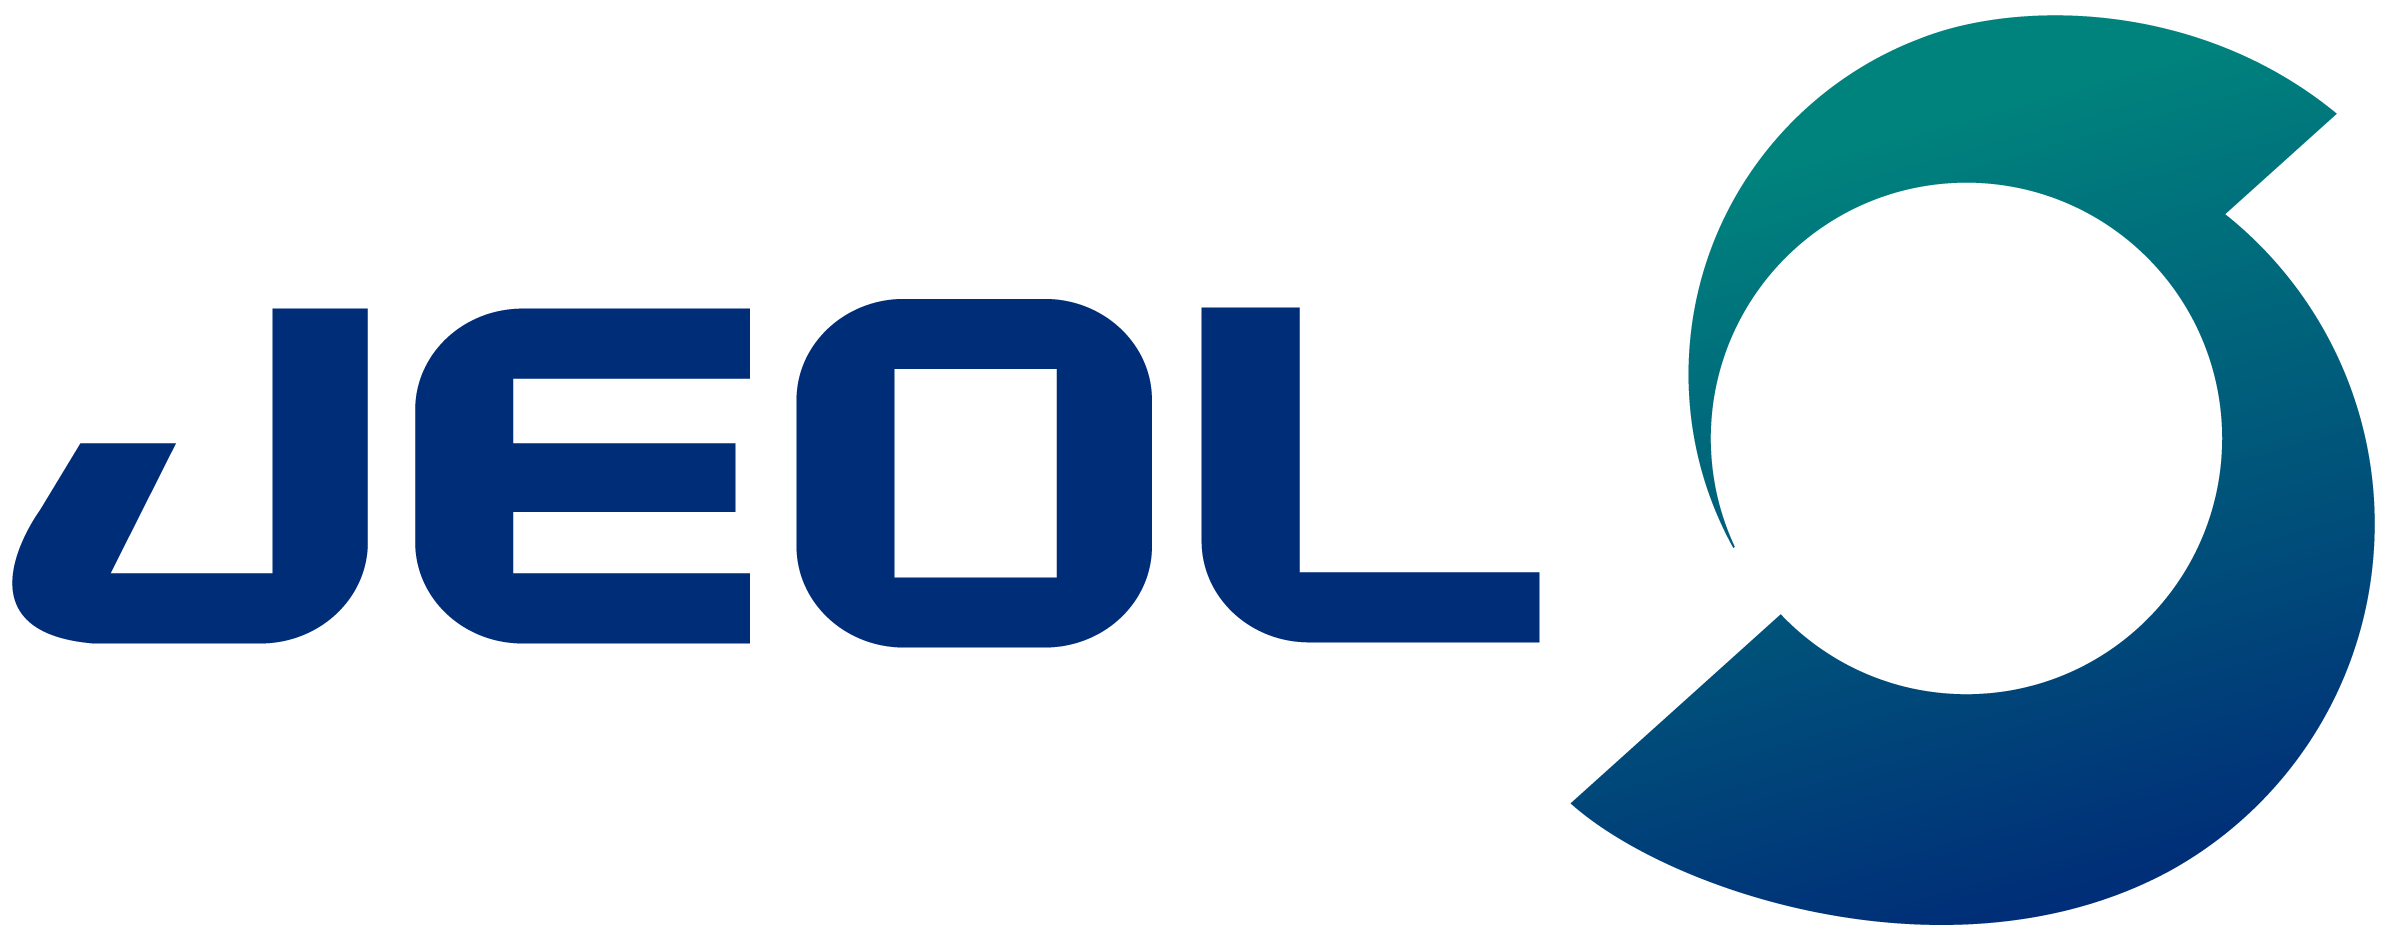 Logo JEOL